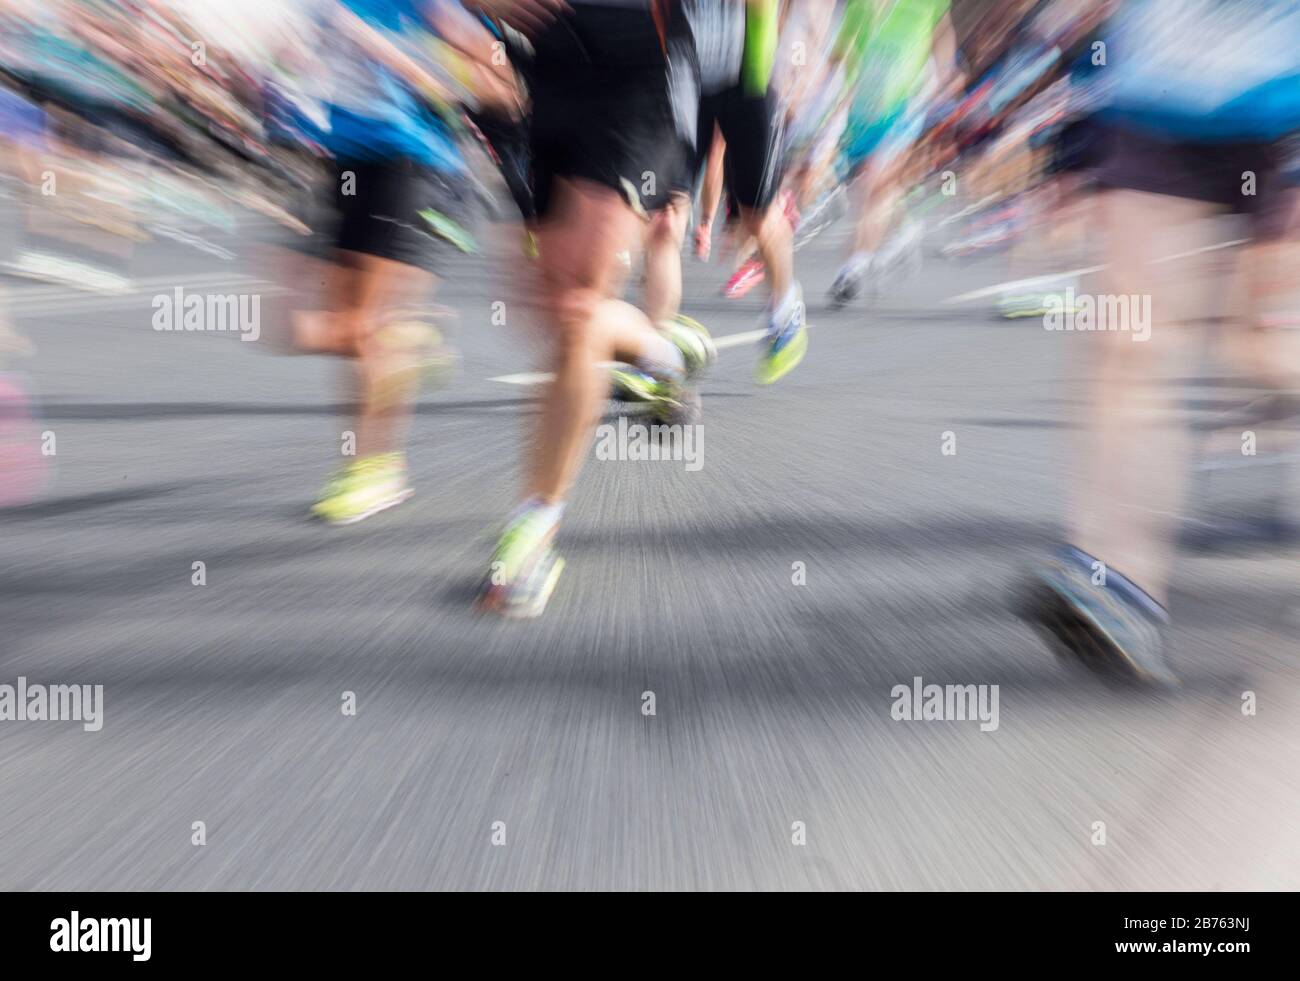 Une photo d'effet zoom montre les participants au 36ème semi-marathon de Berlin le 03.04.2016. [traduction automatique] Banque D'Images